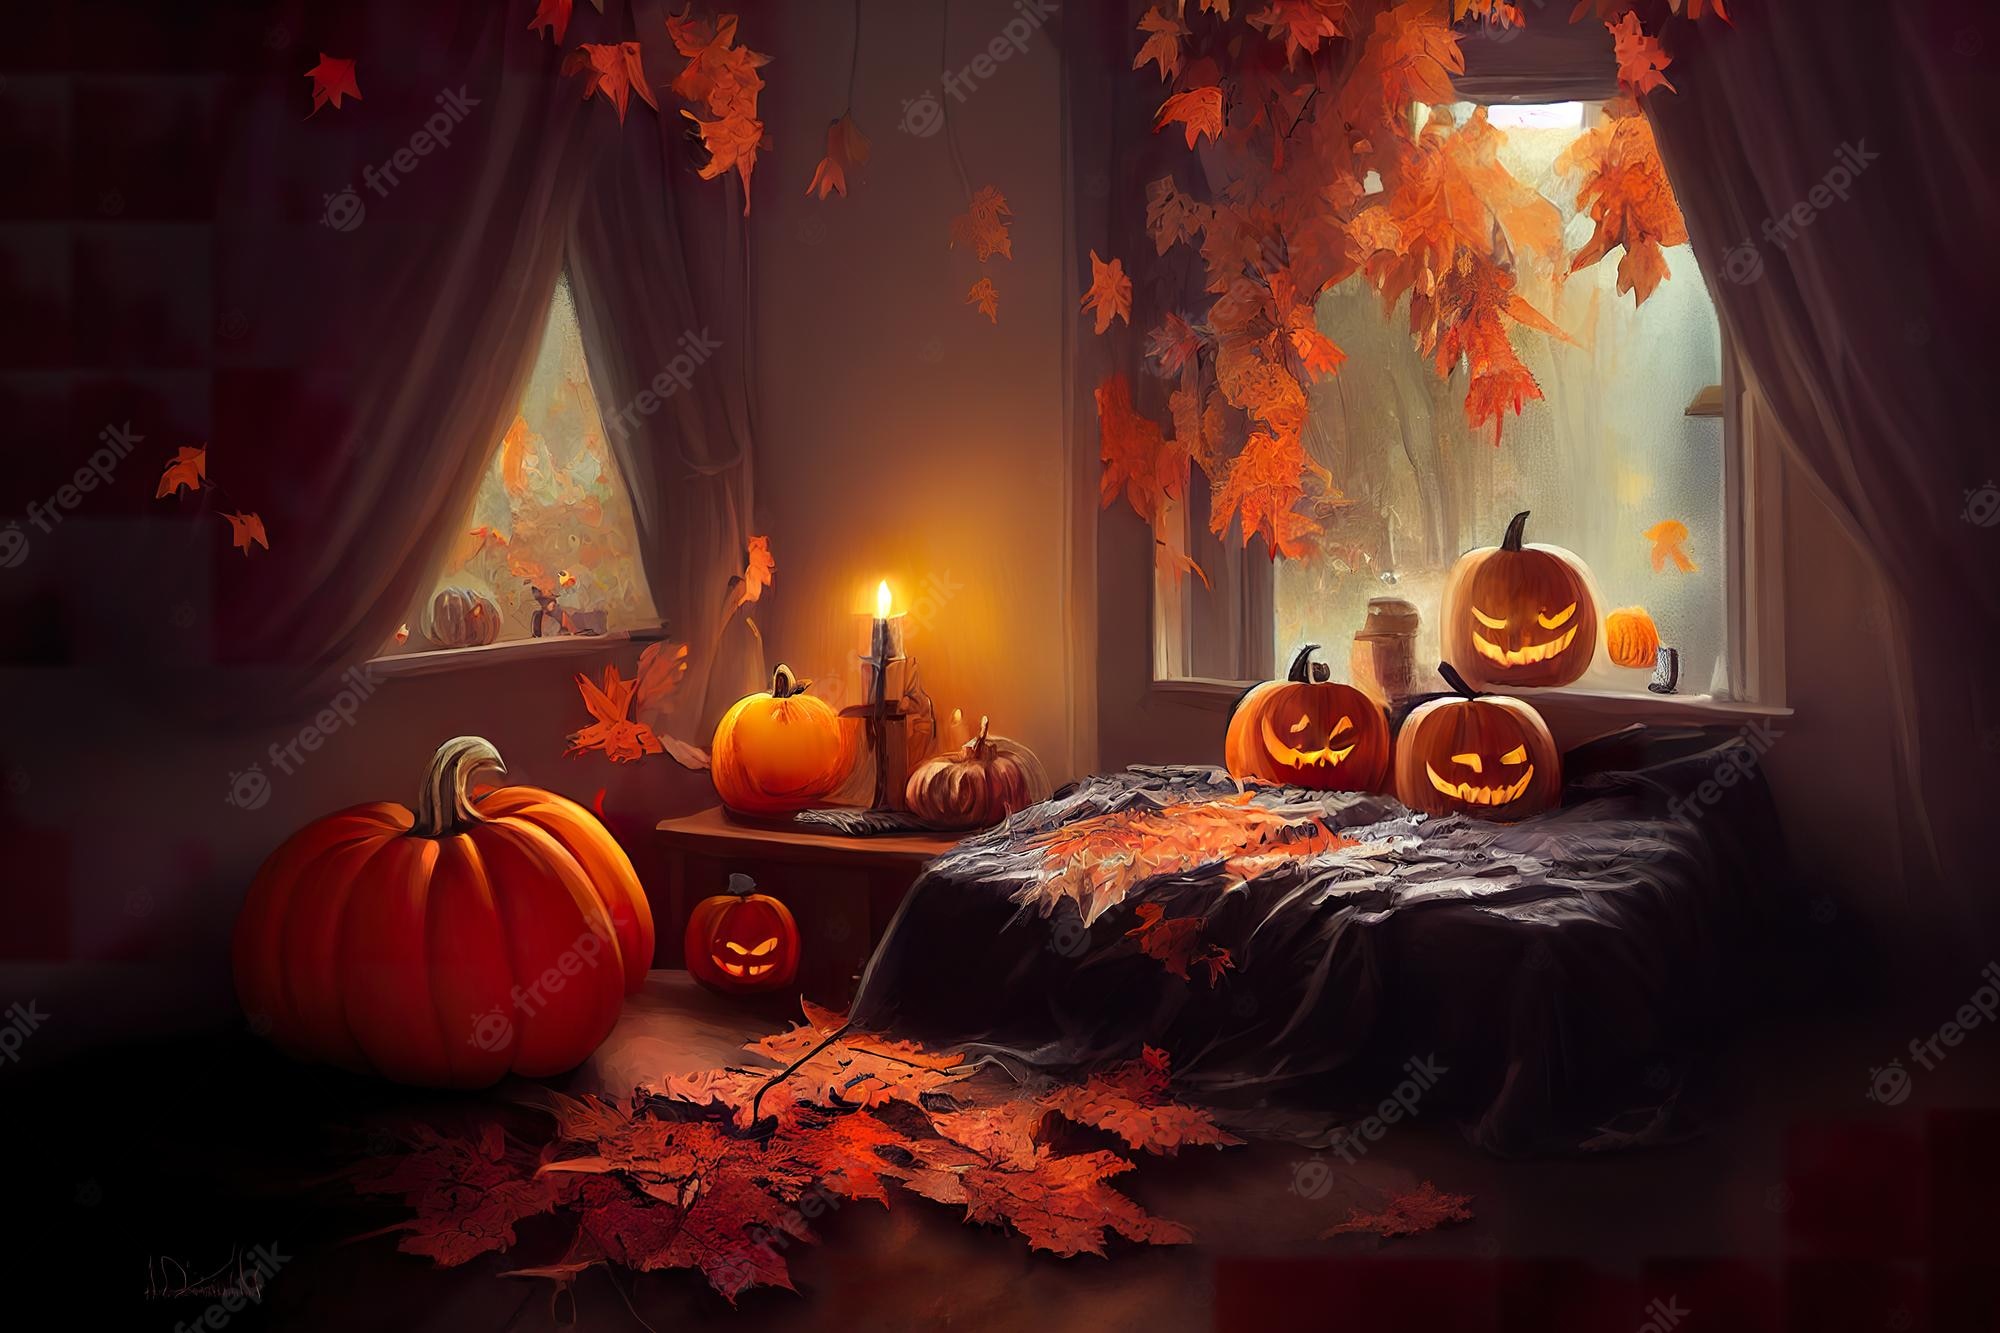 Cozy Halloween Desktop Wallpapers - Wallpaper Cave